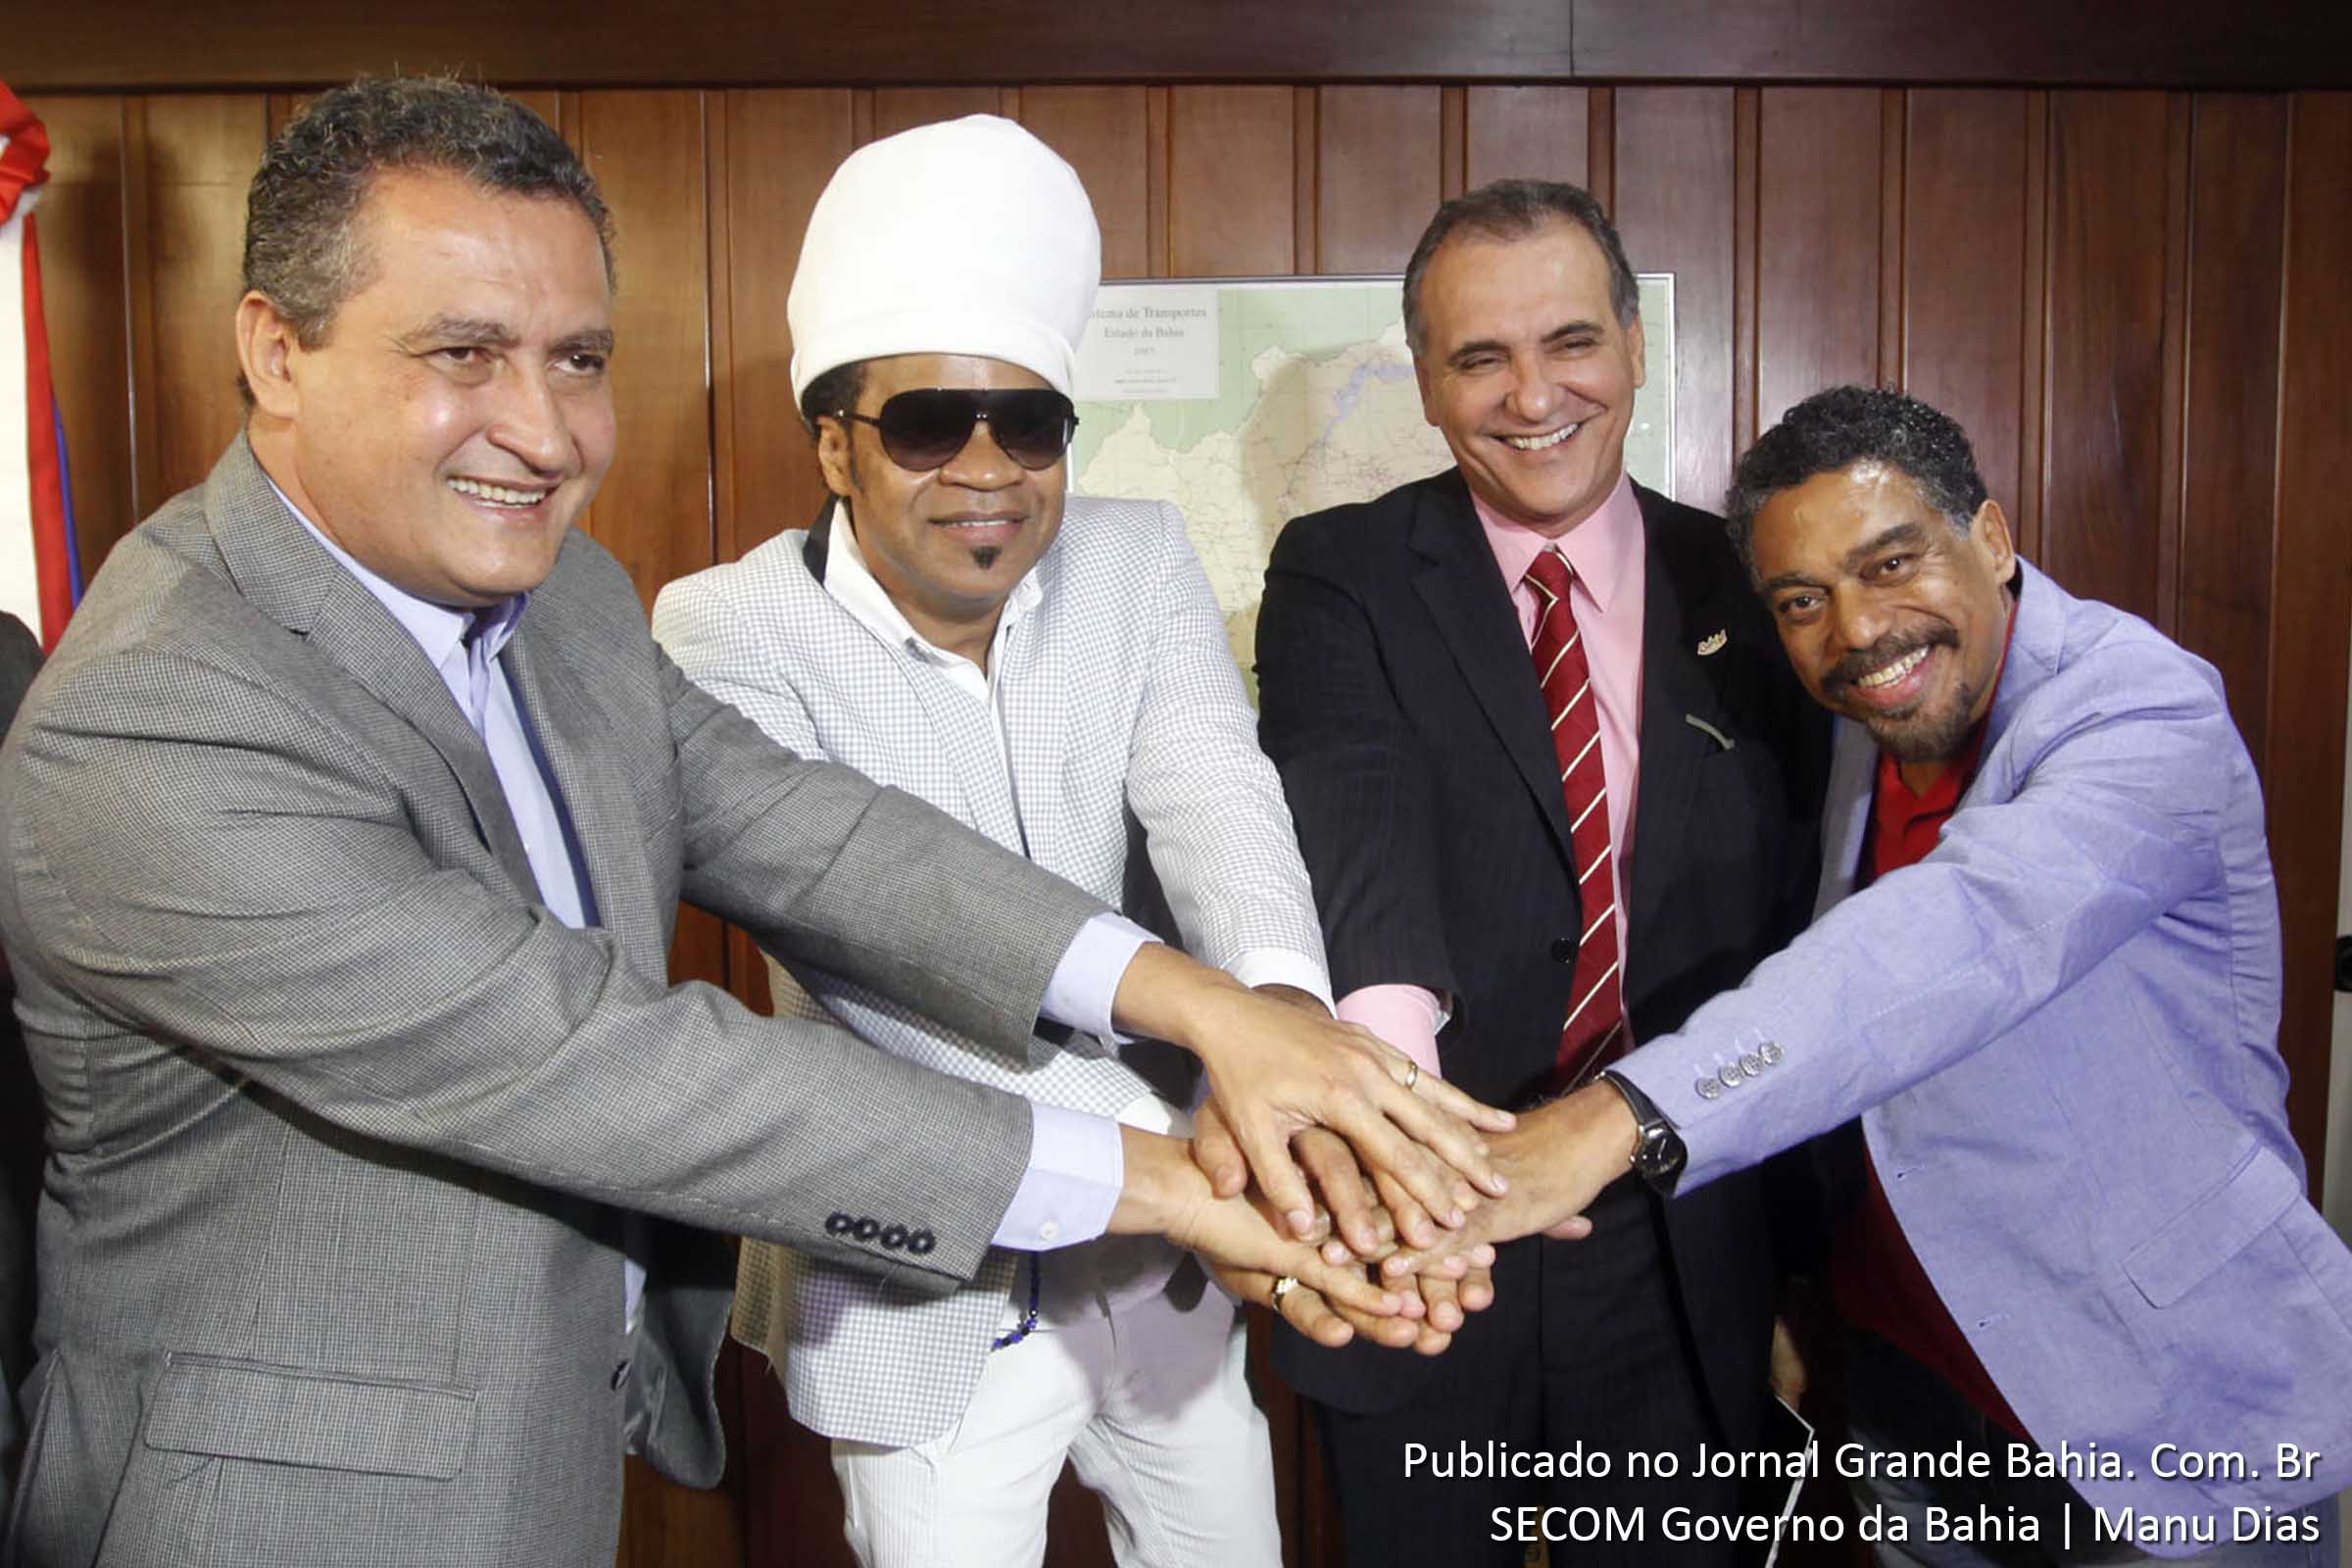 Rui Costa, Carlinhos Brown, Nelson Pelegrino, e Jorge Portugal comemoram união para troca de ideias.